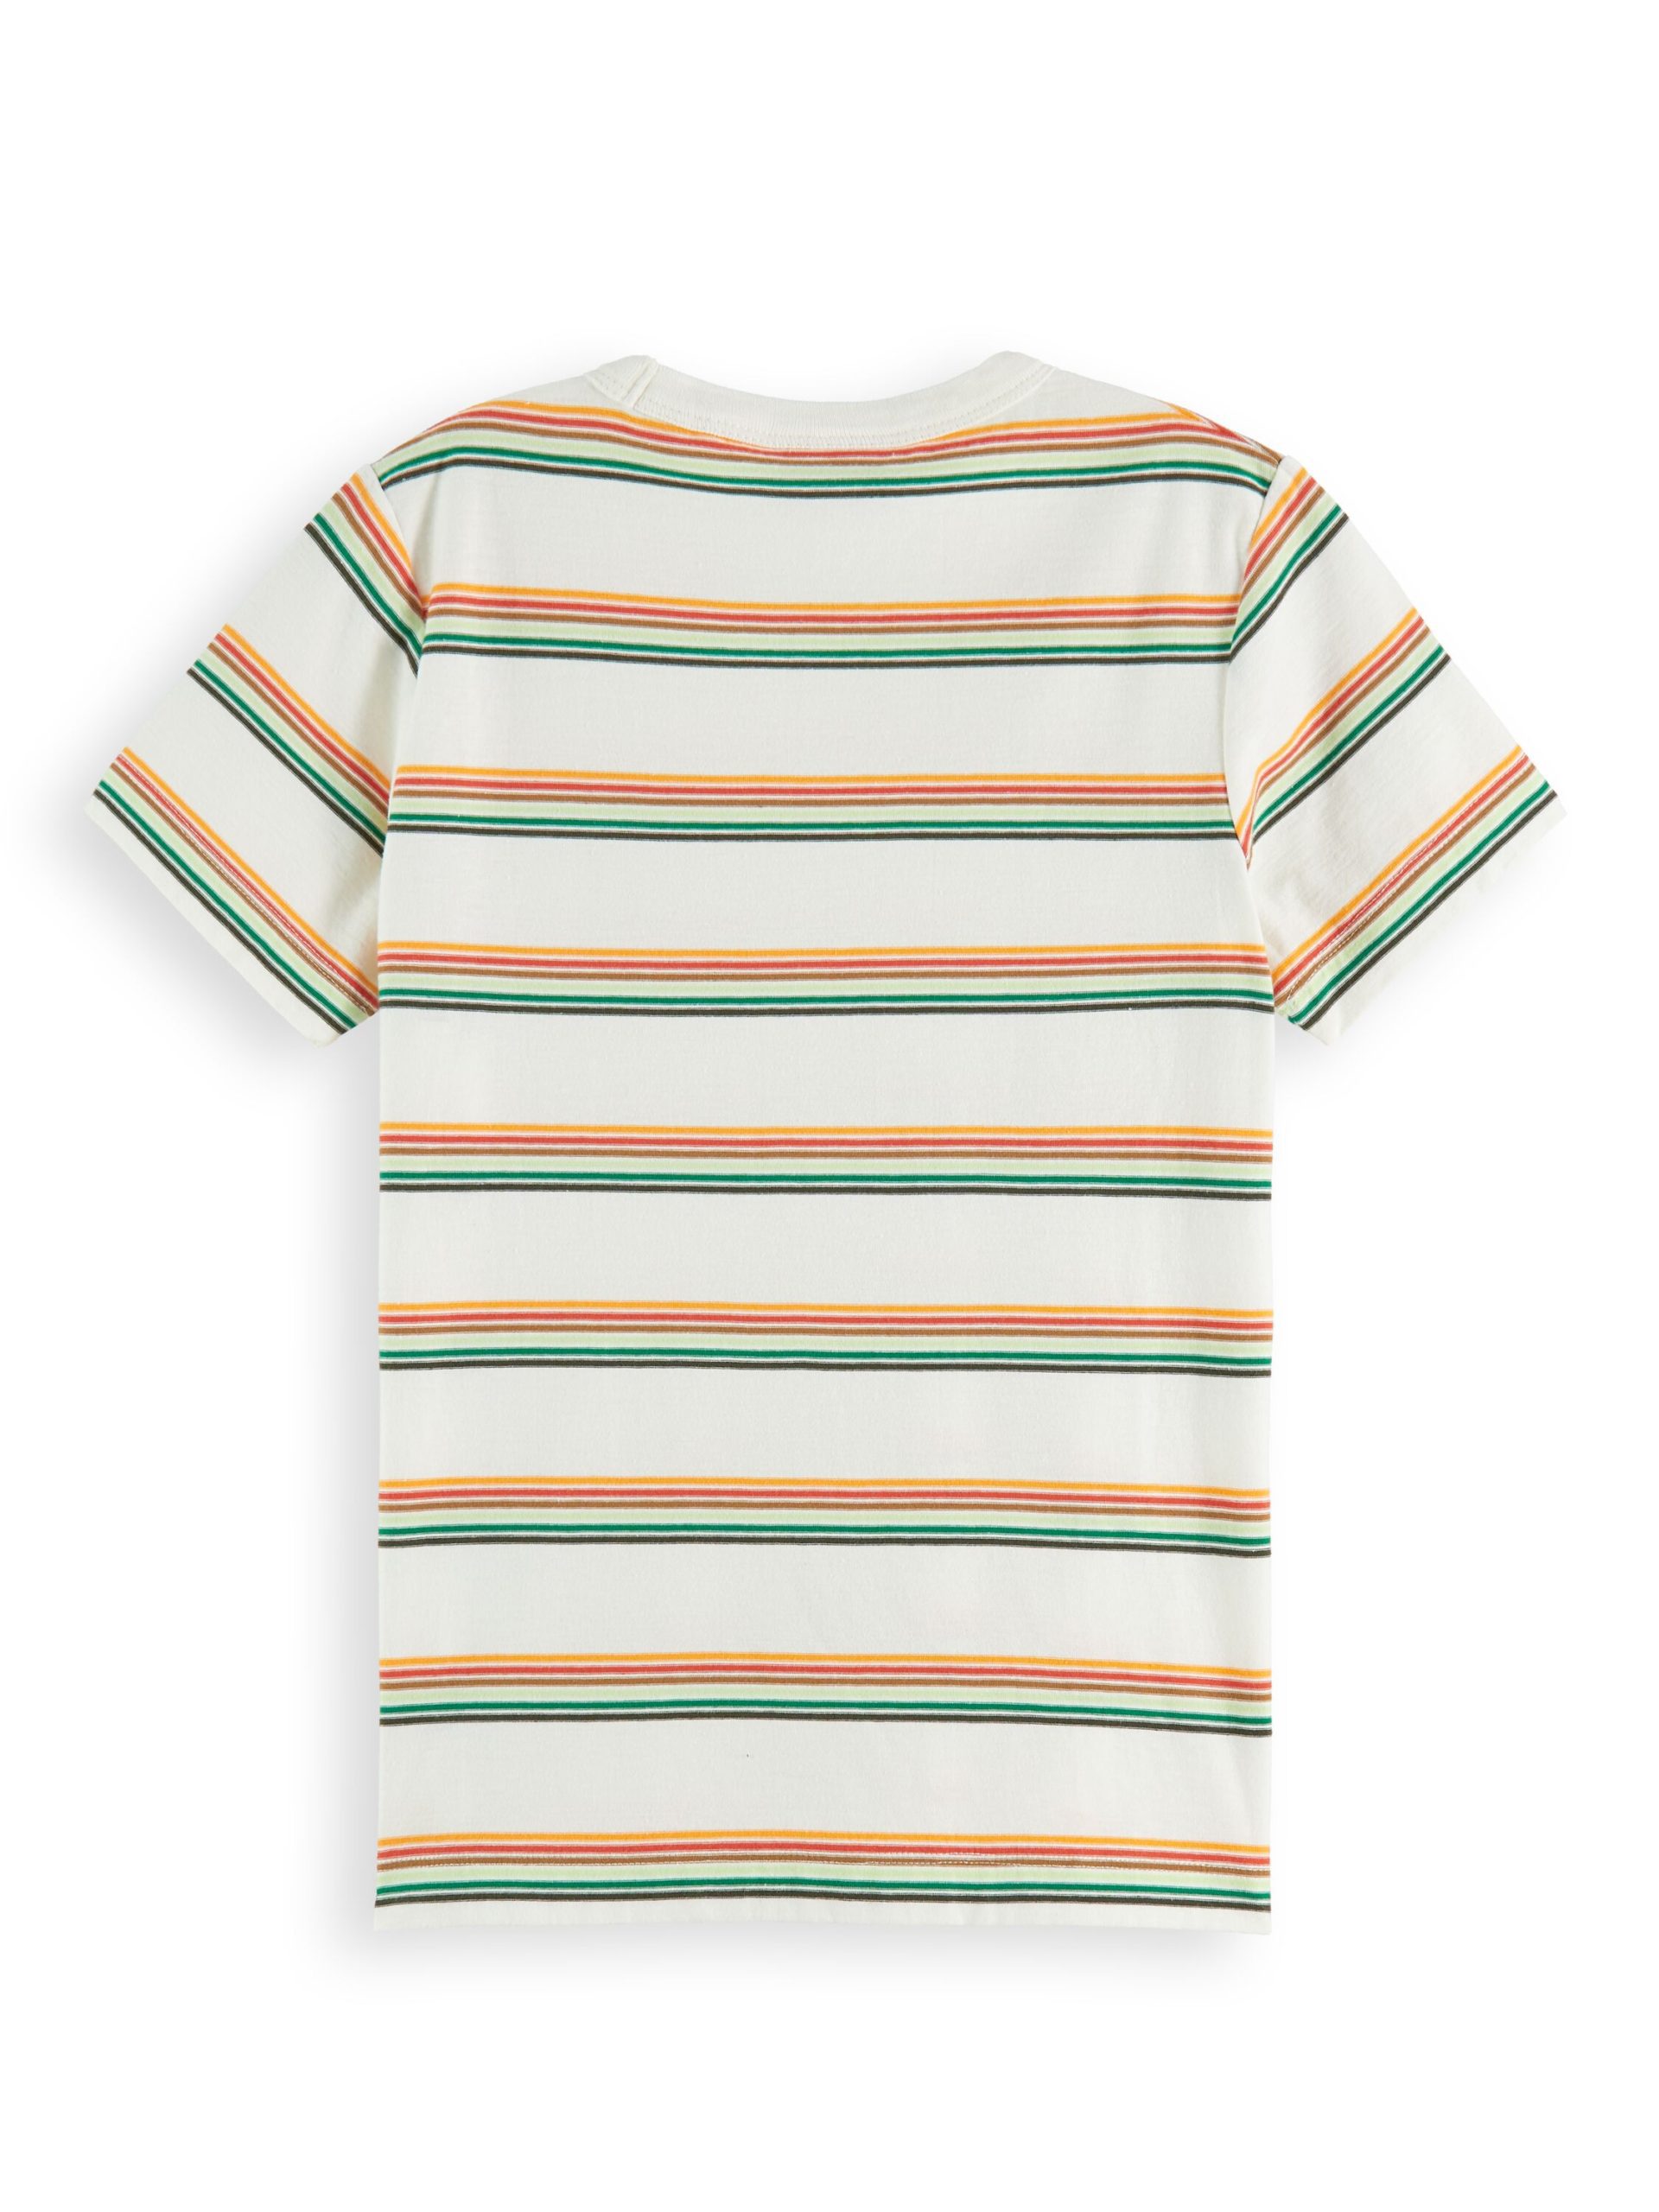 Scotch Shrunk Organic Cotton Striped T-Shirt - BREEZYKIDZ